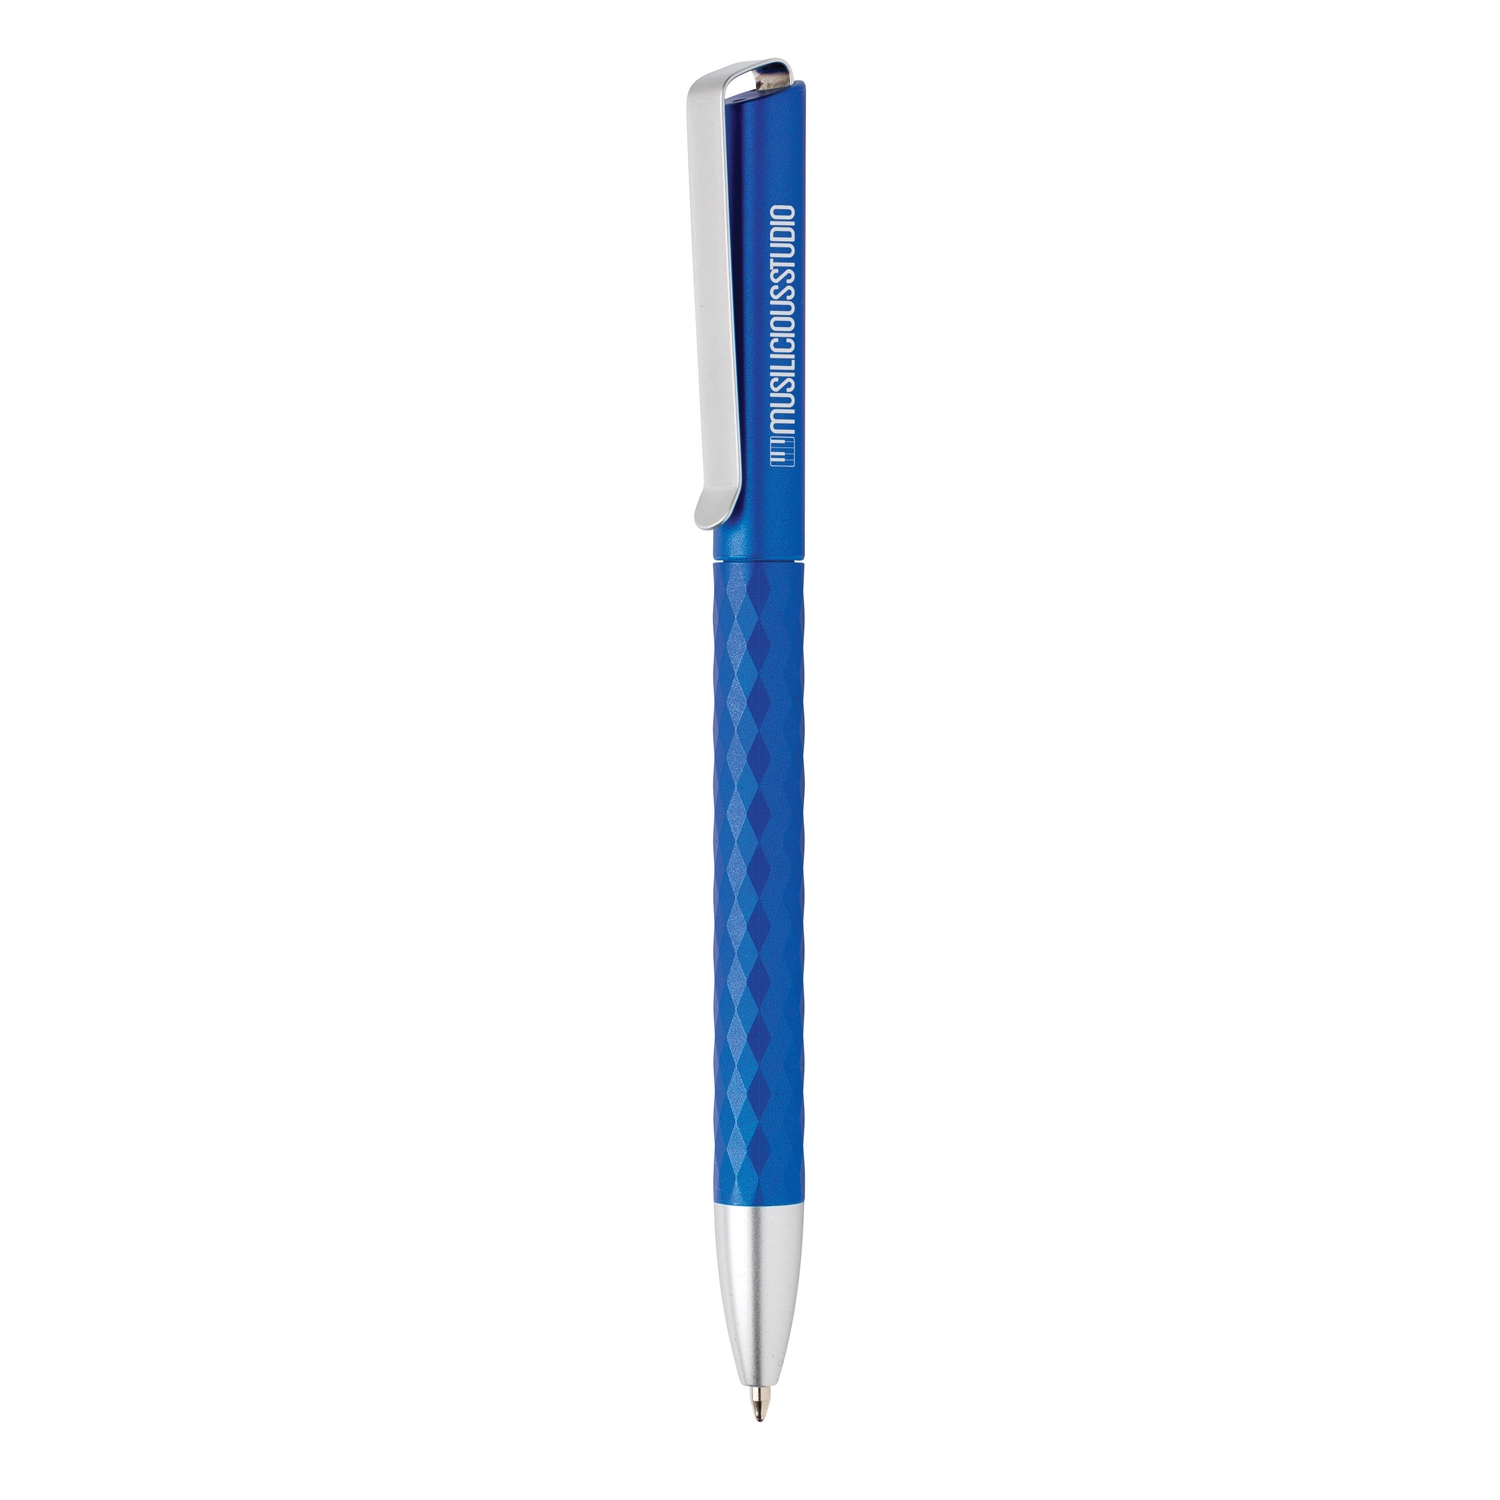 Ручка X3.1, синий, abs; железо